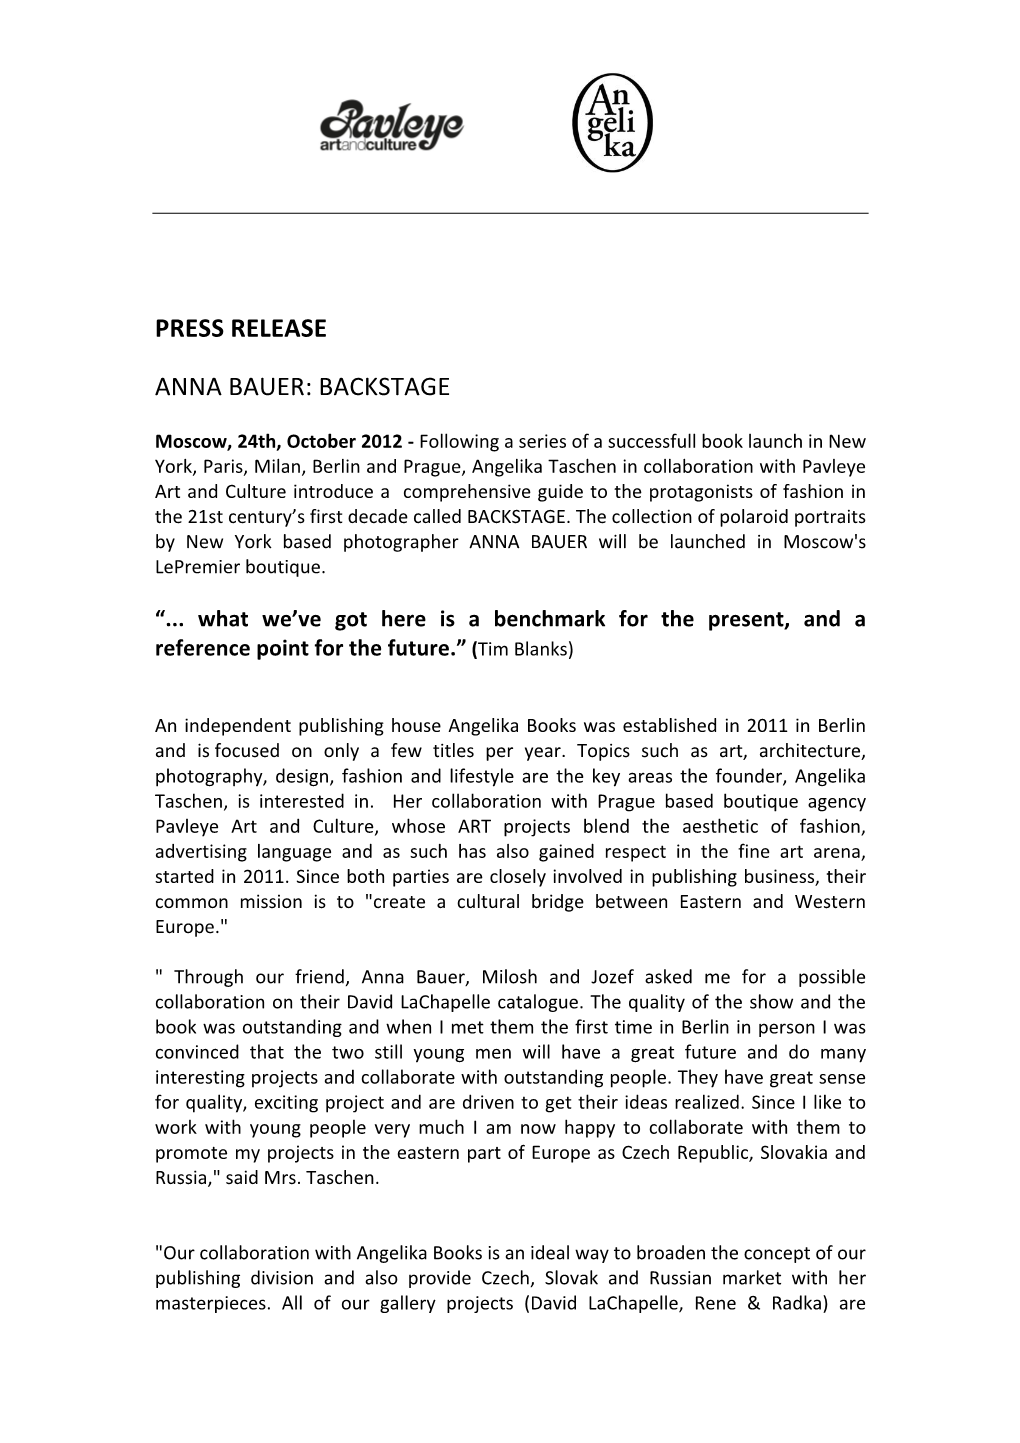 Press Release Anna Bauer